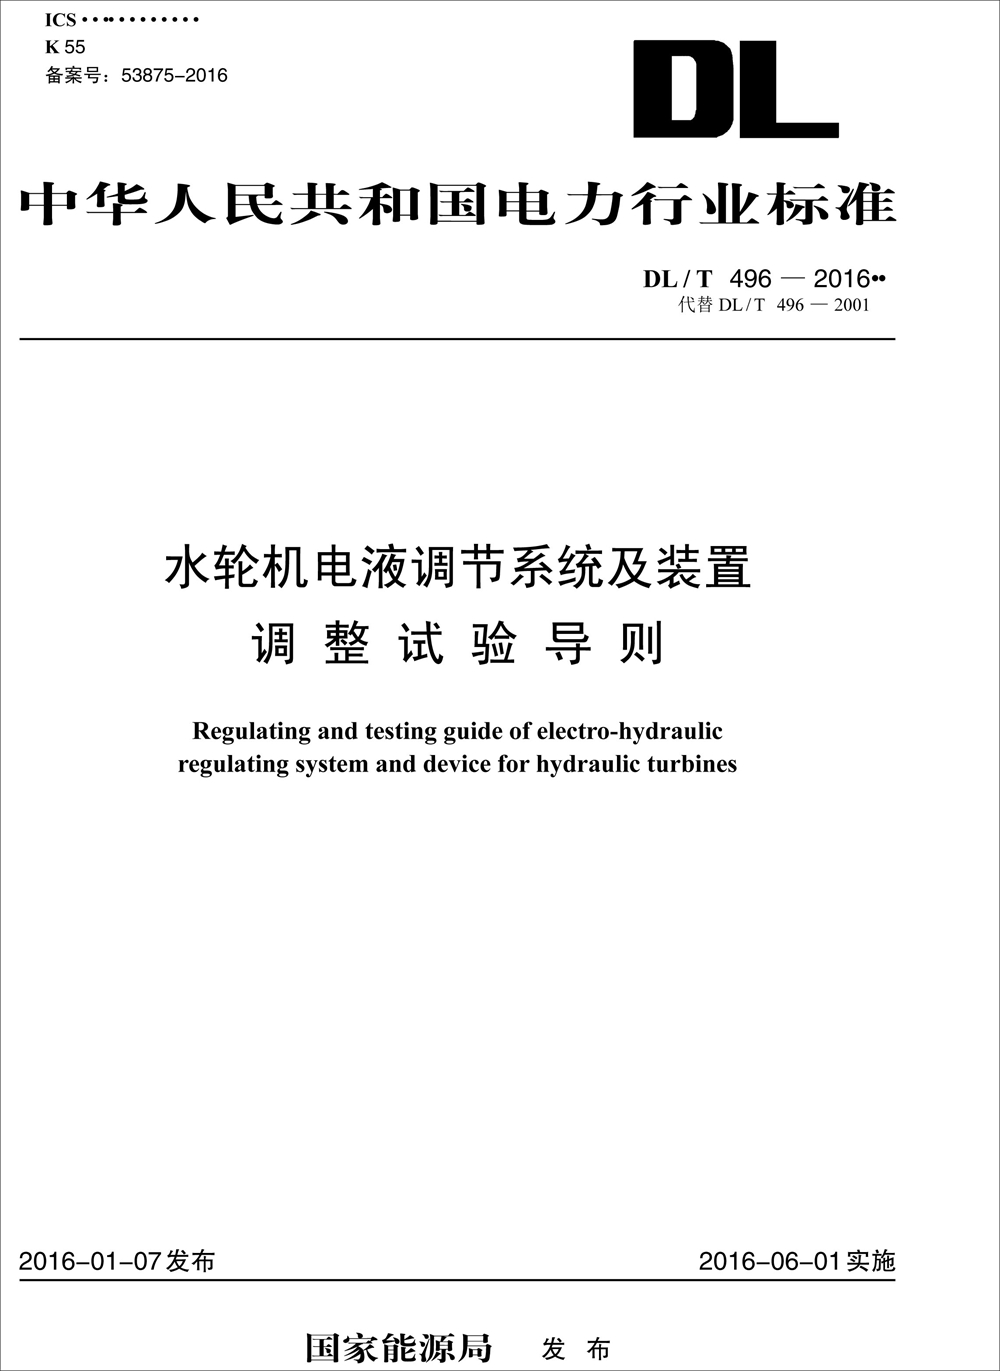 中华人民共和国电力行业标准（DL/T 496-2016）：水轮机电液调节系统及装置调整试验导则 pdf格式下载